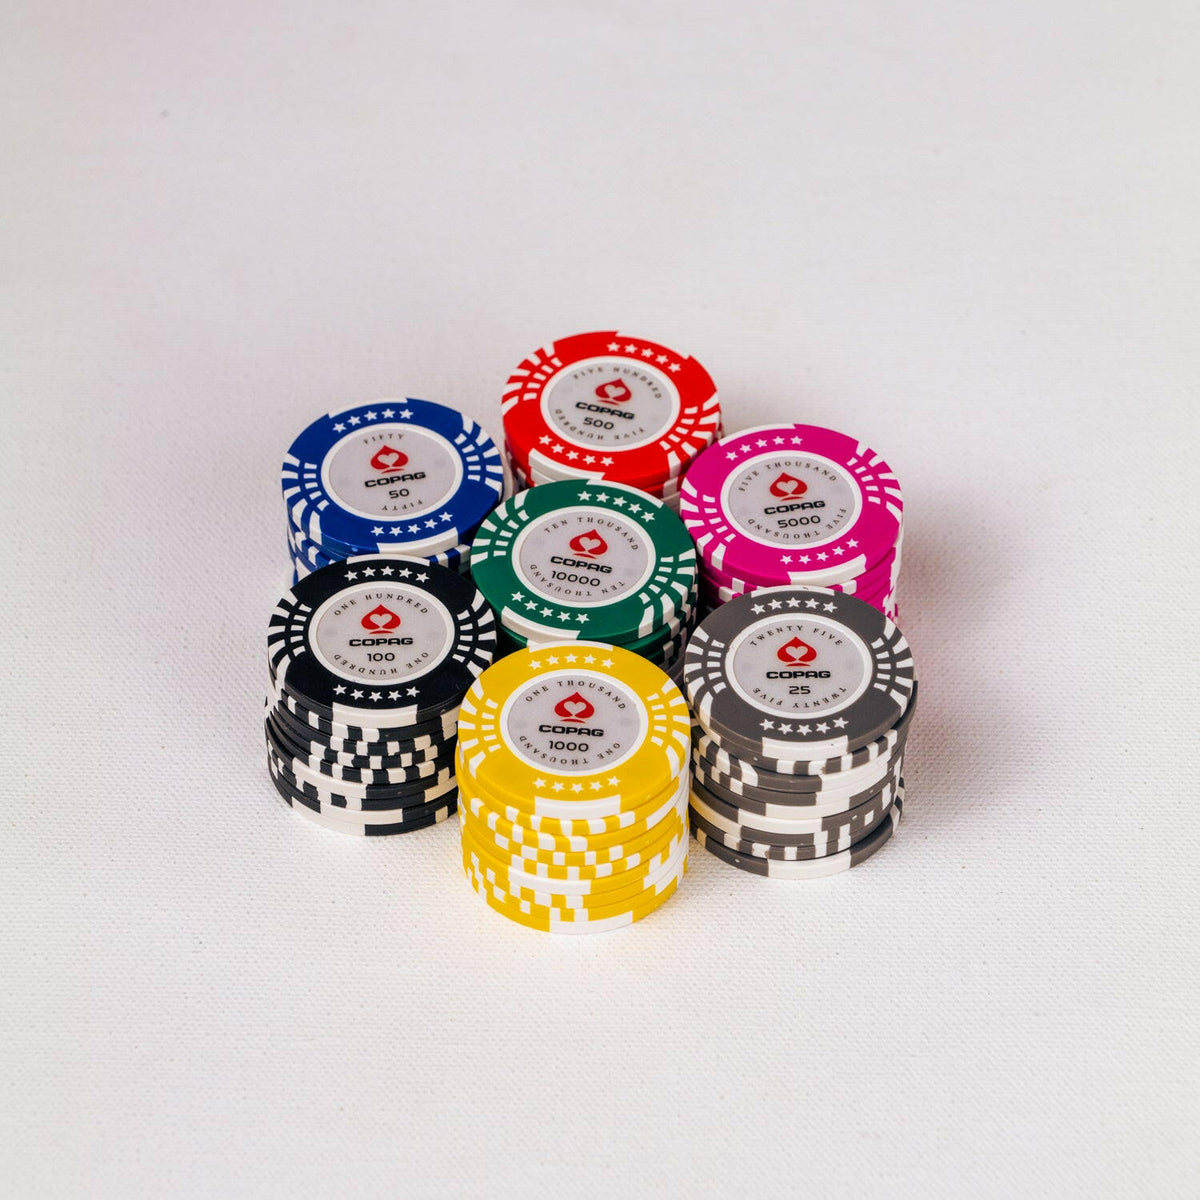 zeemijl musicus Uiterlijk Shop Copag 300 And 500 Pieces Poker Chipsets Online At Baazistore.com